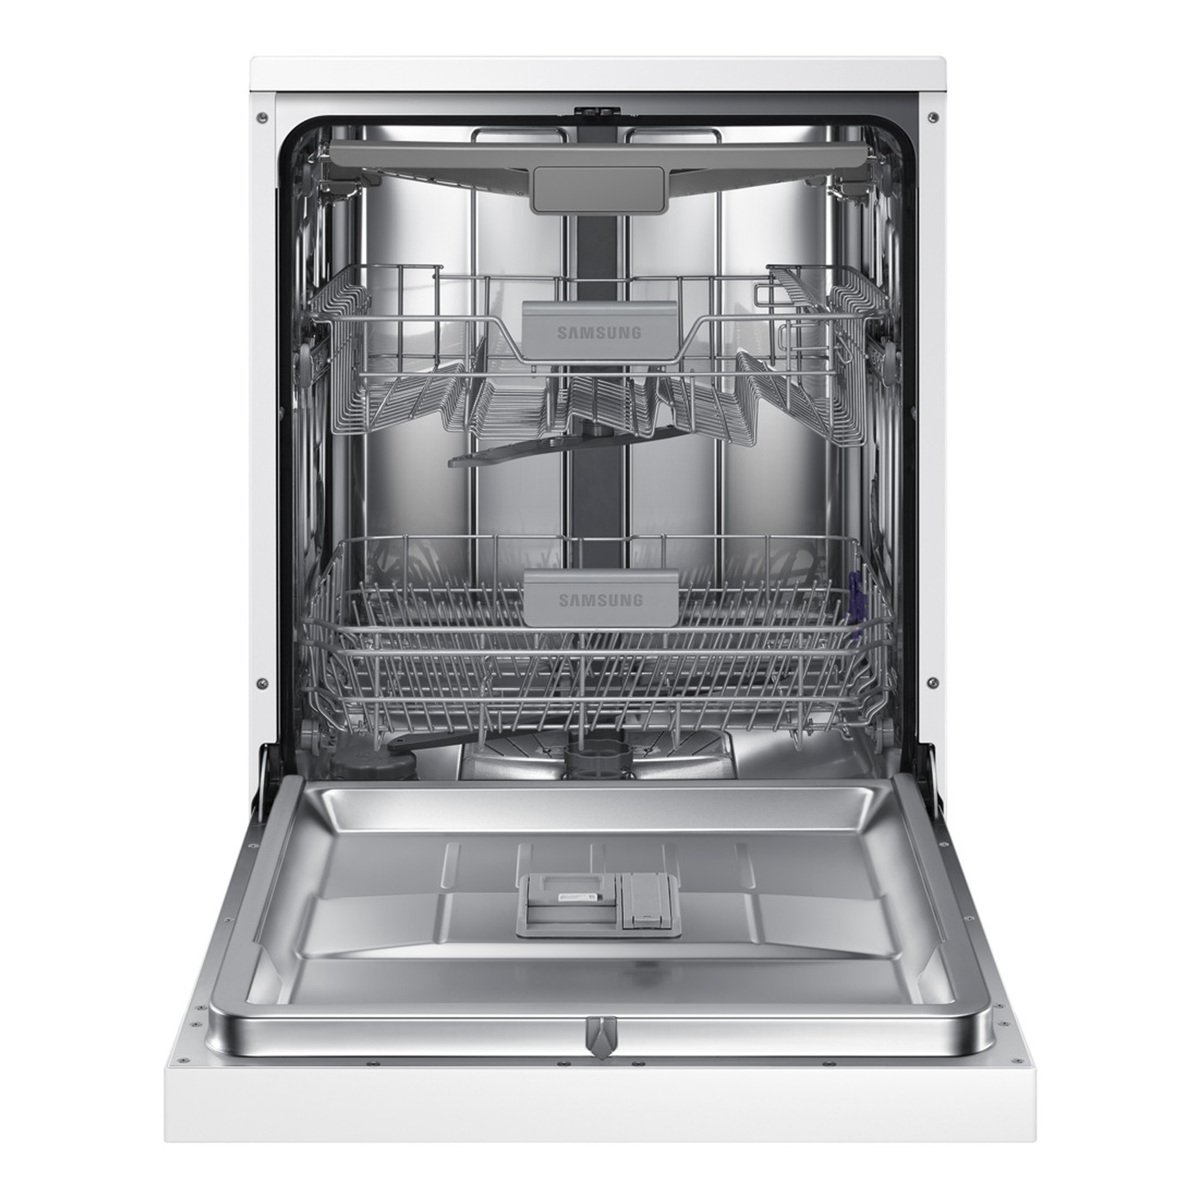 Samsung Dishwasher DW60M5070FW/SG 7Programs